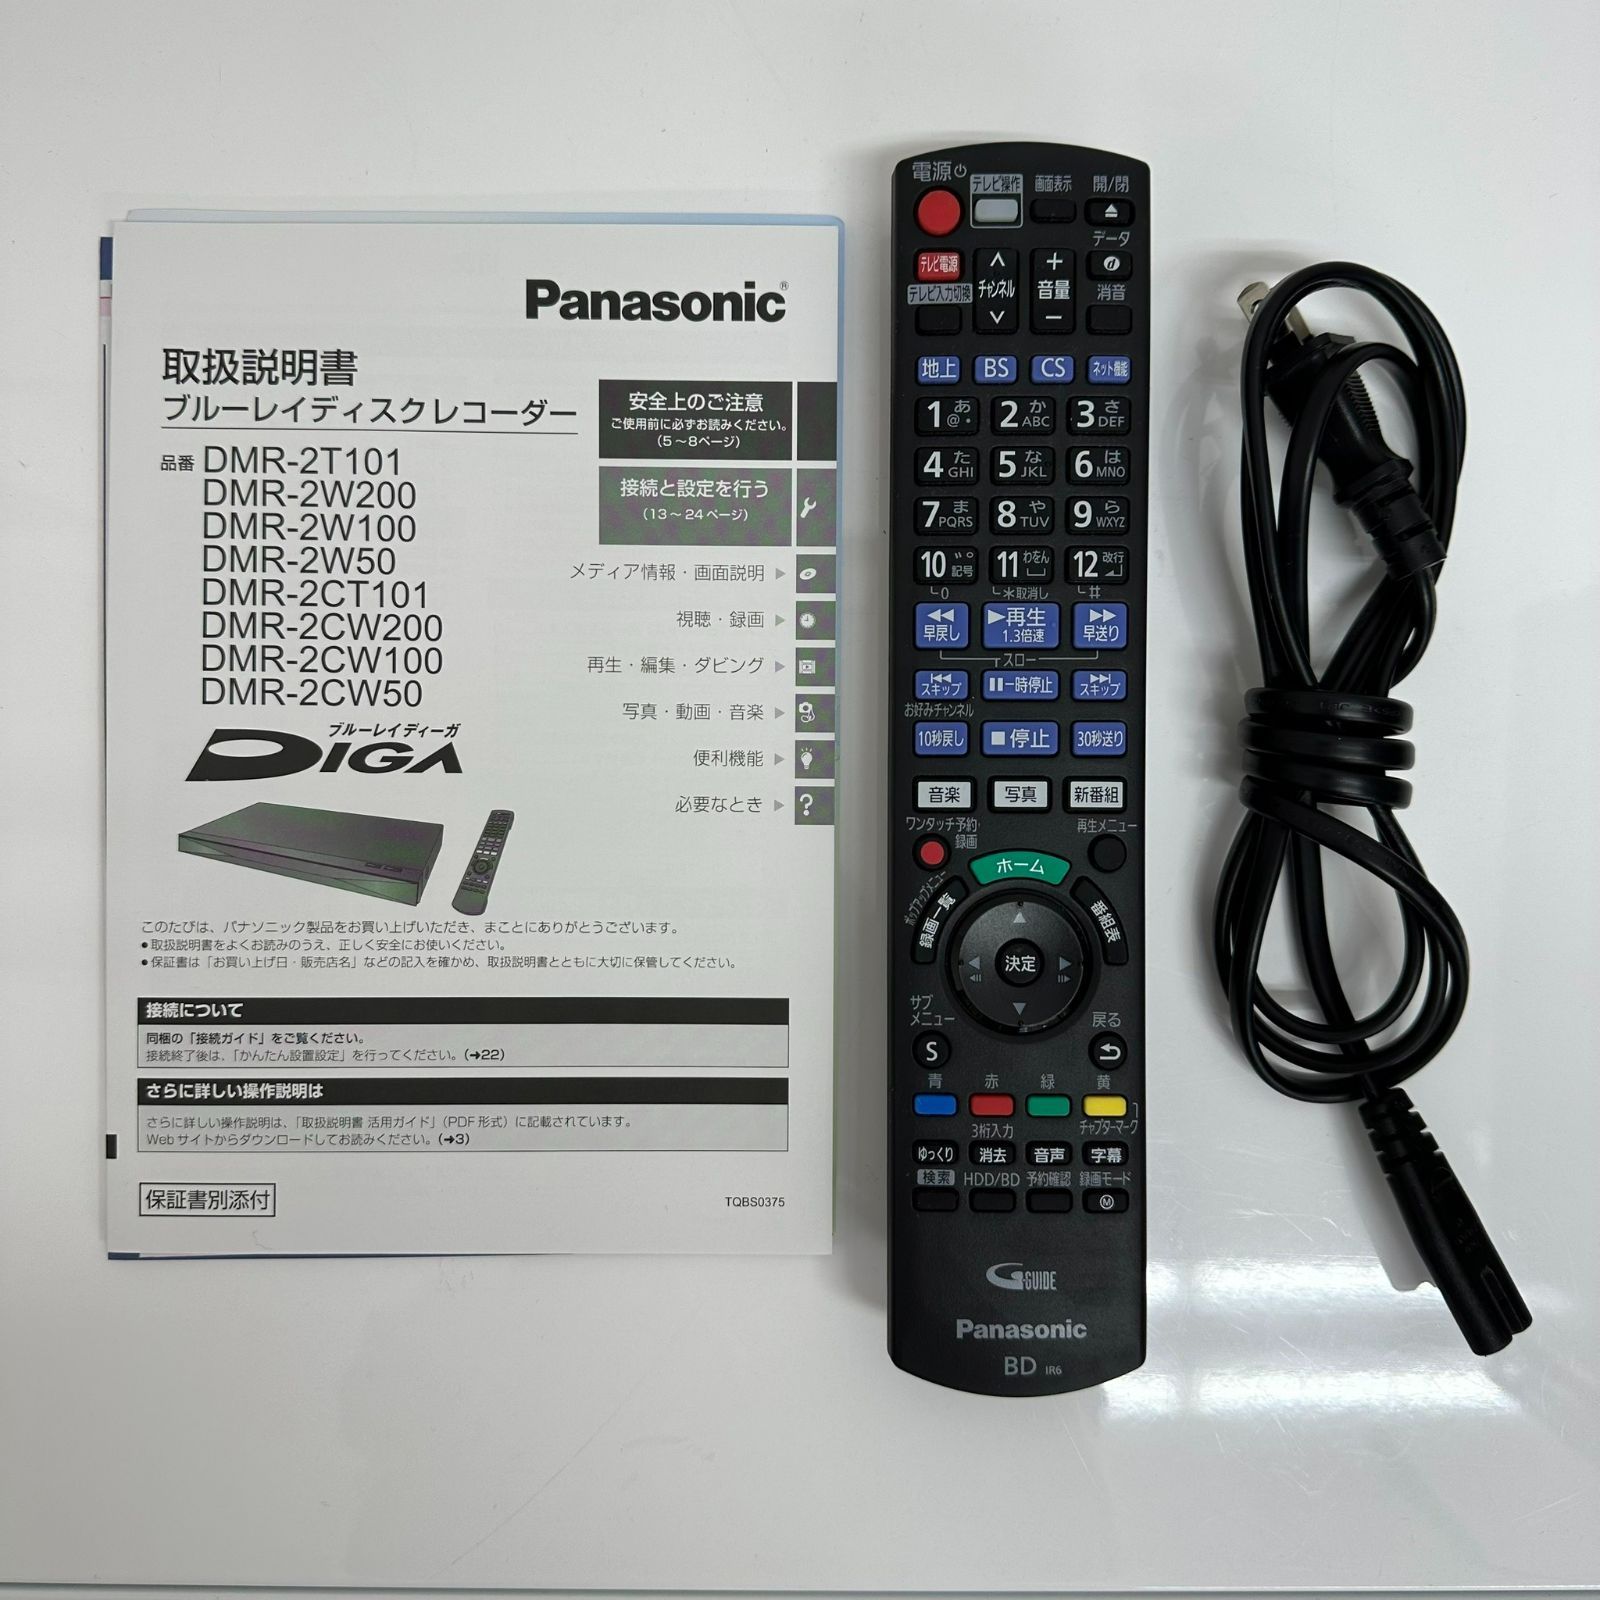 Panasonic ブルーレイディスクレコーダー DMR-2CW100 - ブルーレイ ...